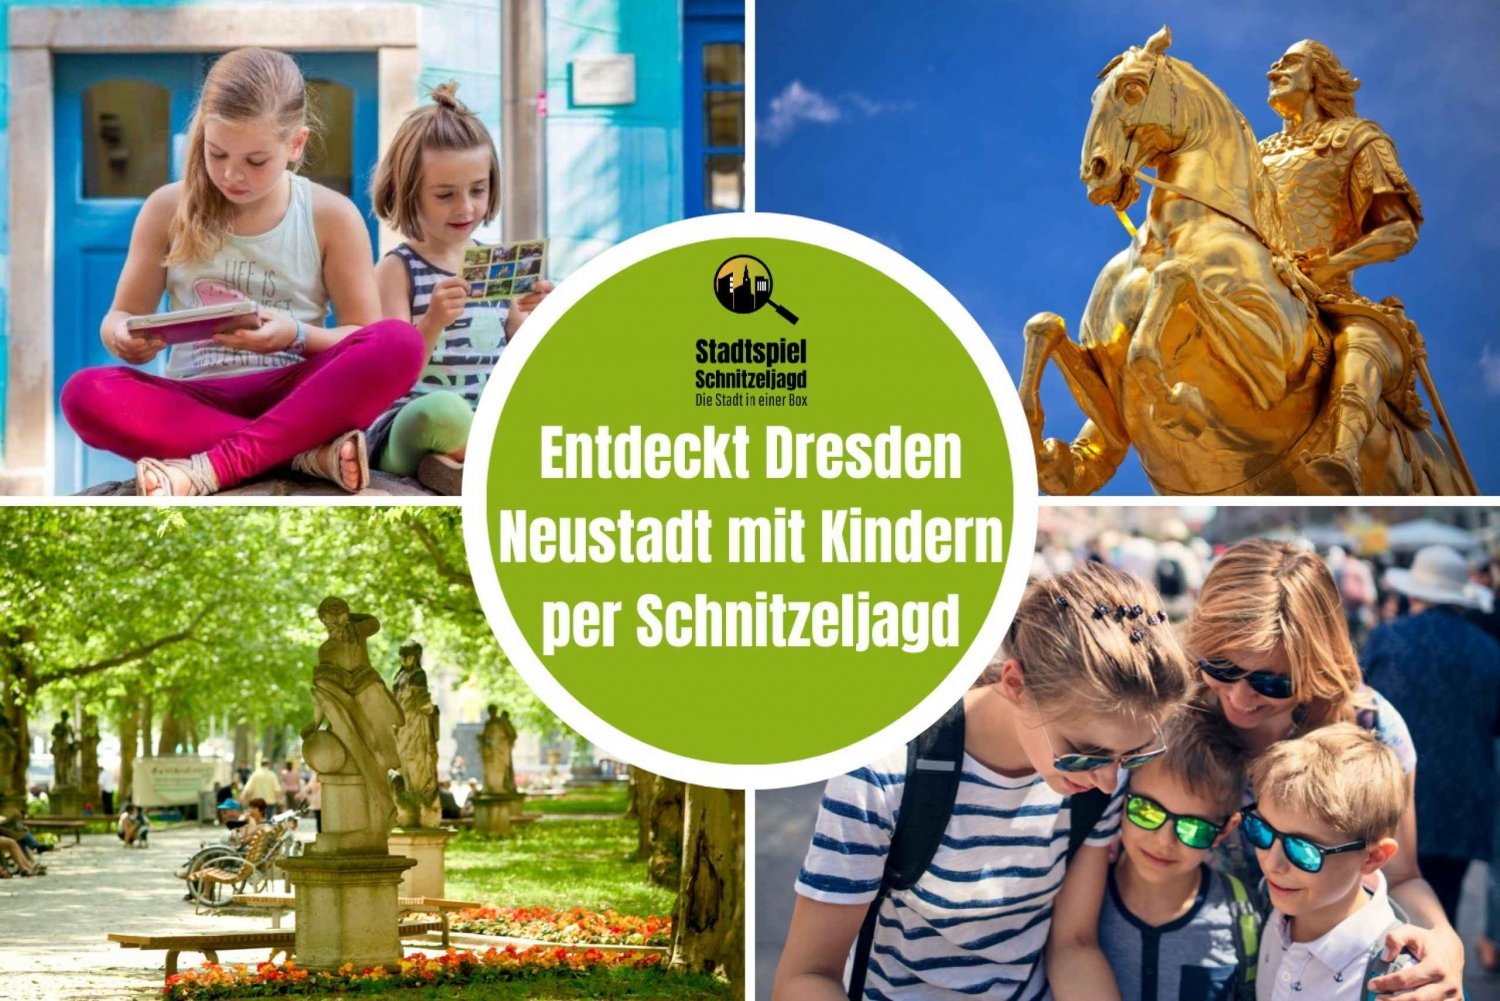 Dresden Neustadt: Scavenger Hunt for børn